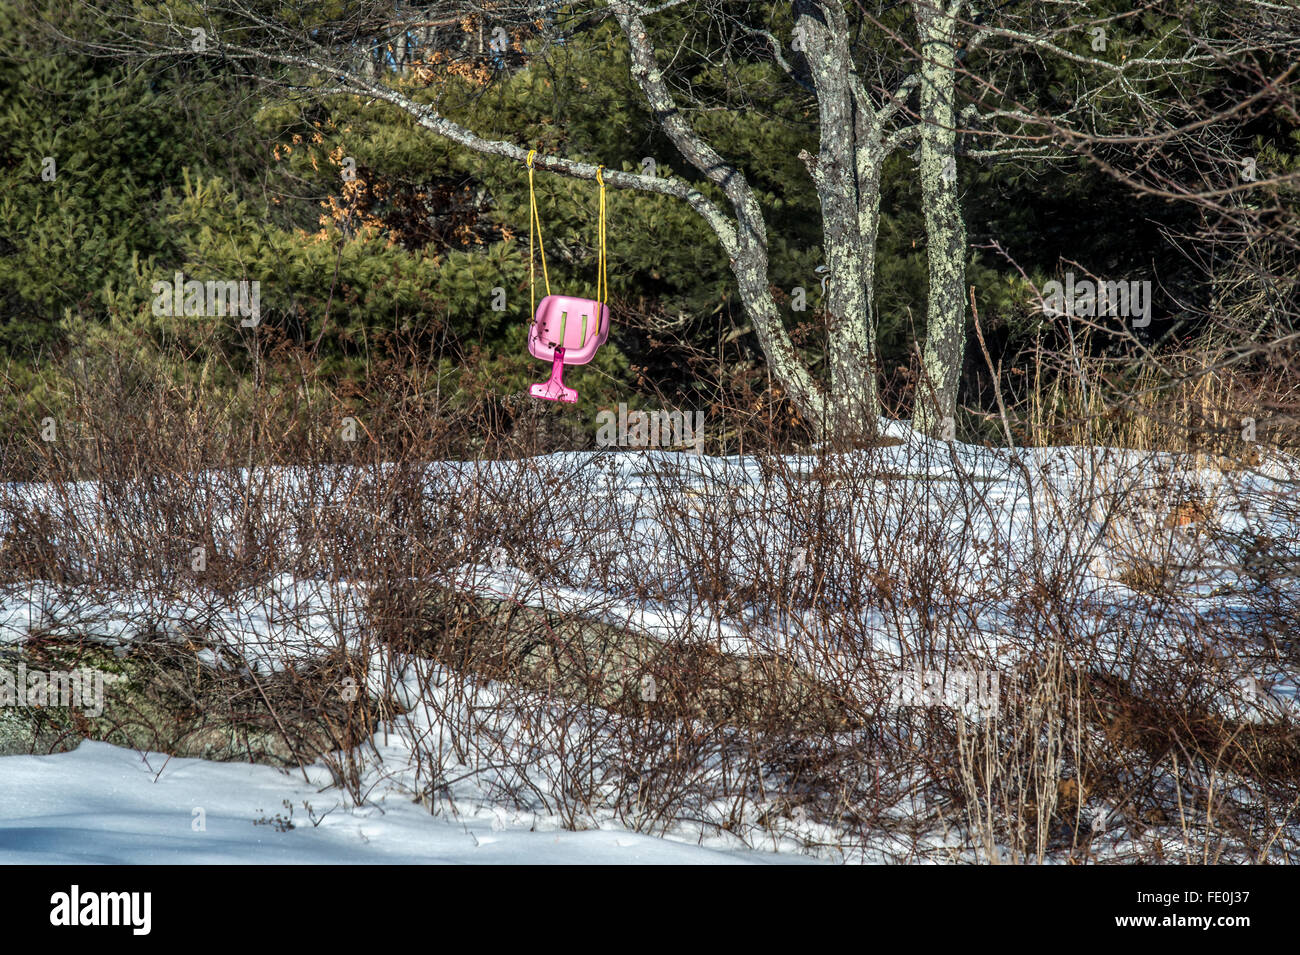 Ein kleines Mädchen hat eine neue rosa schwingen, aber es ist jetzt die Mitte des Winters, mit Schnee und Kälte. So sitzt es leer, nur darauf warten. Stockfoto